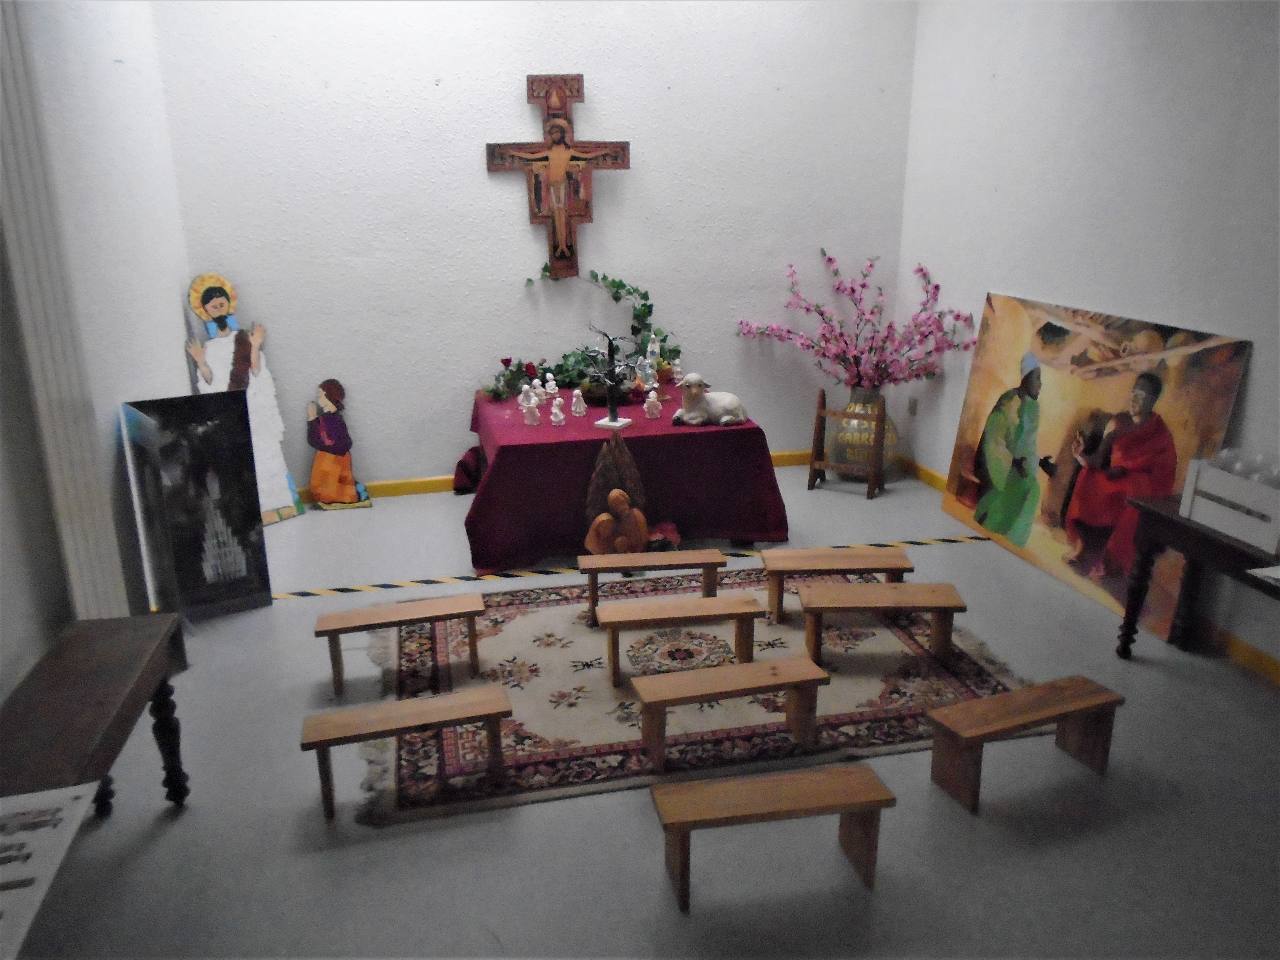 La chapelle des enfants dans la petite maison de Bernadette